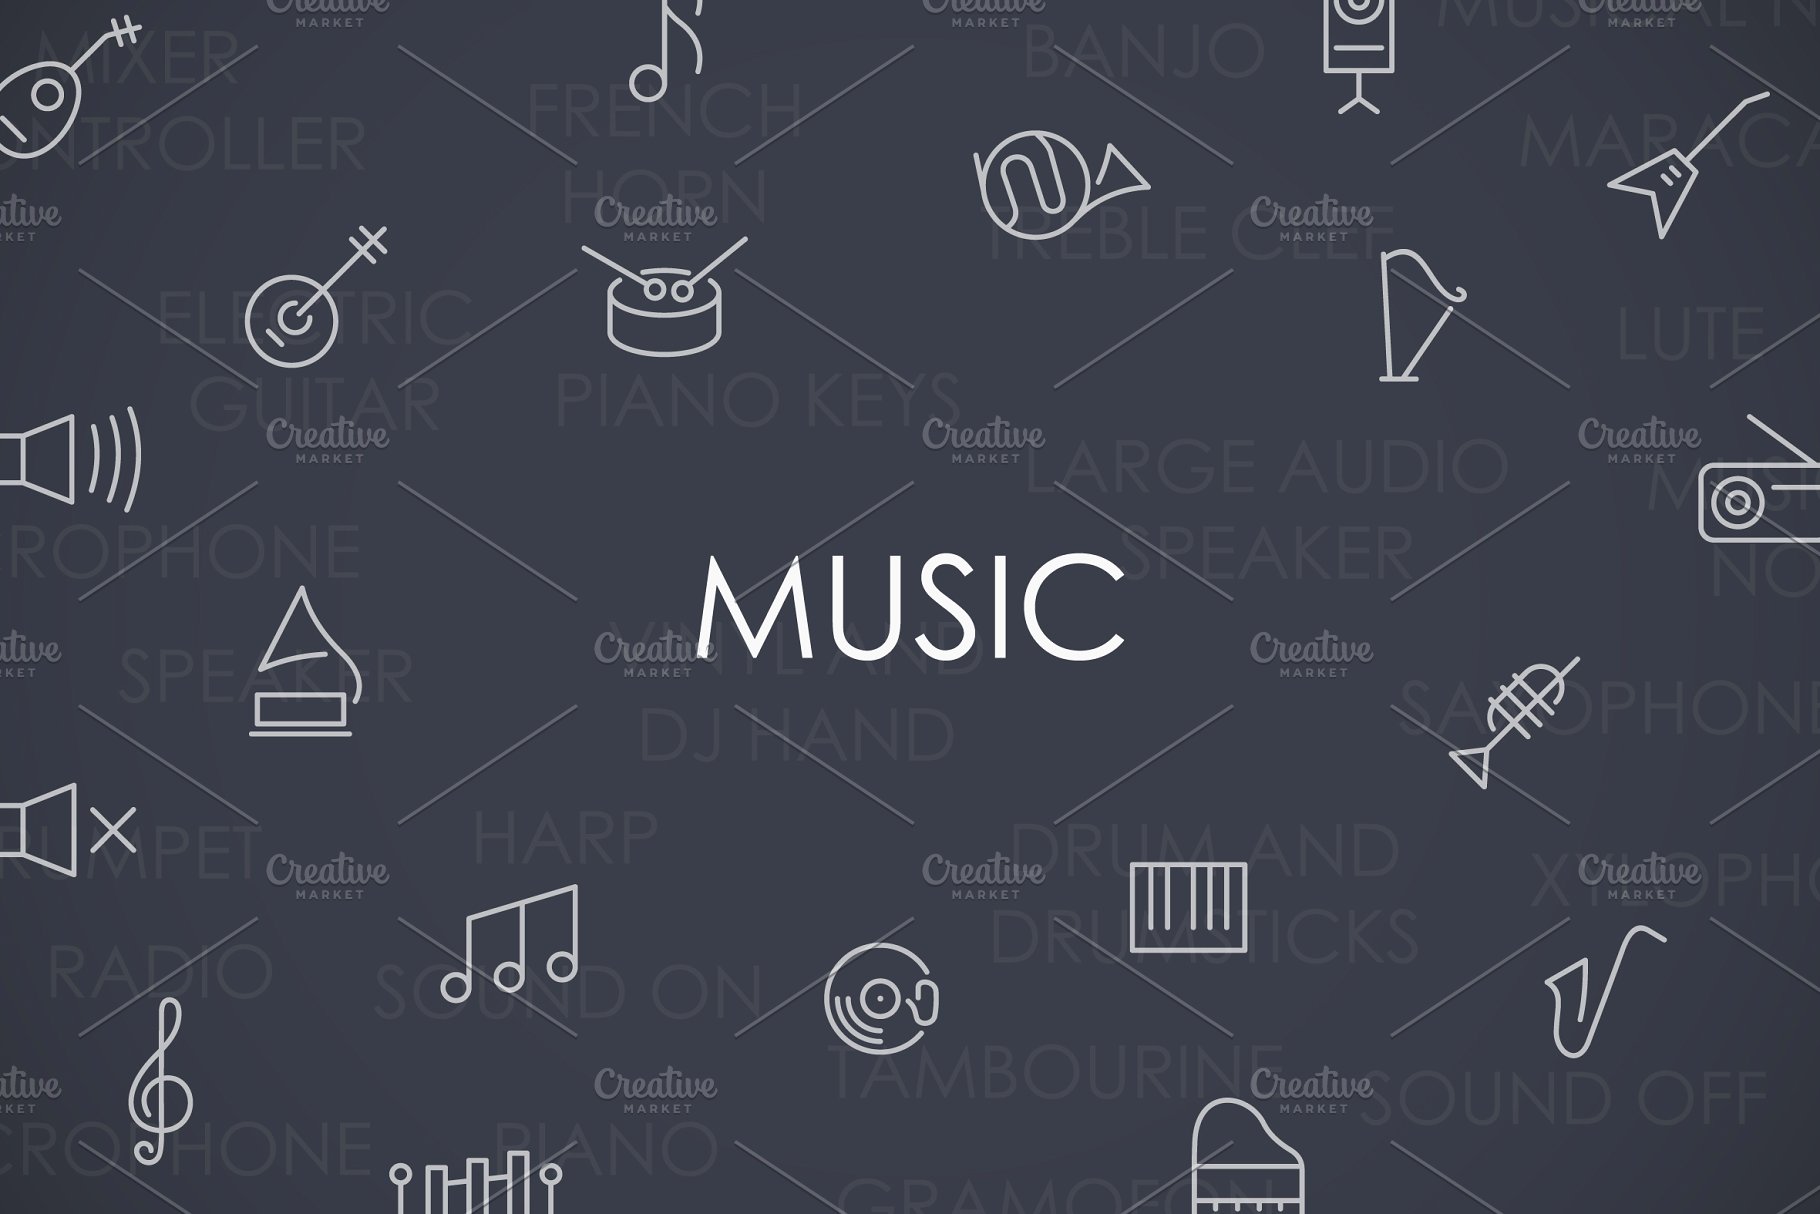 音乐矢量图标下载 Music thinline icons